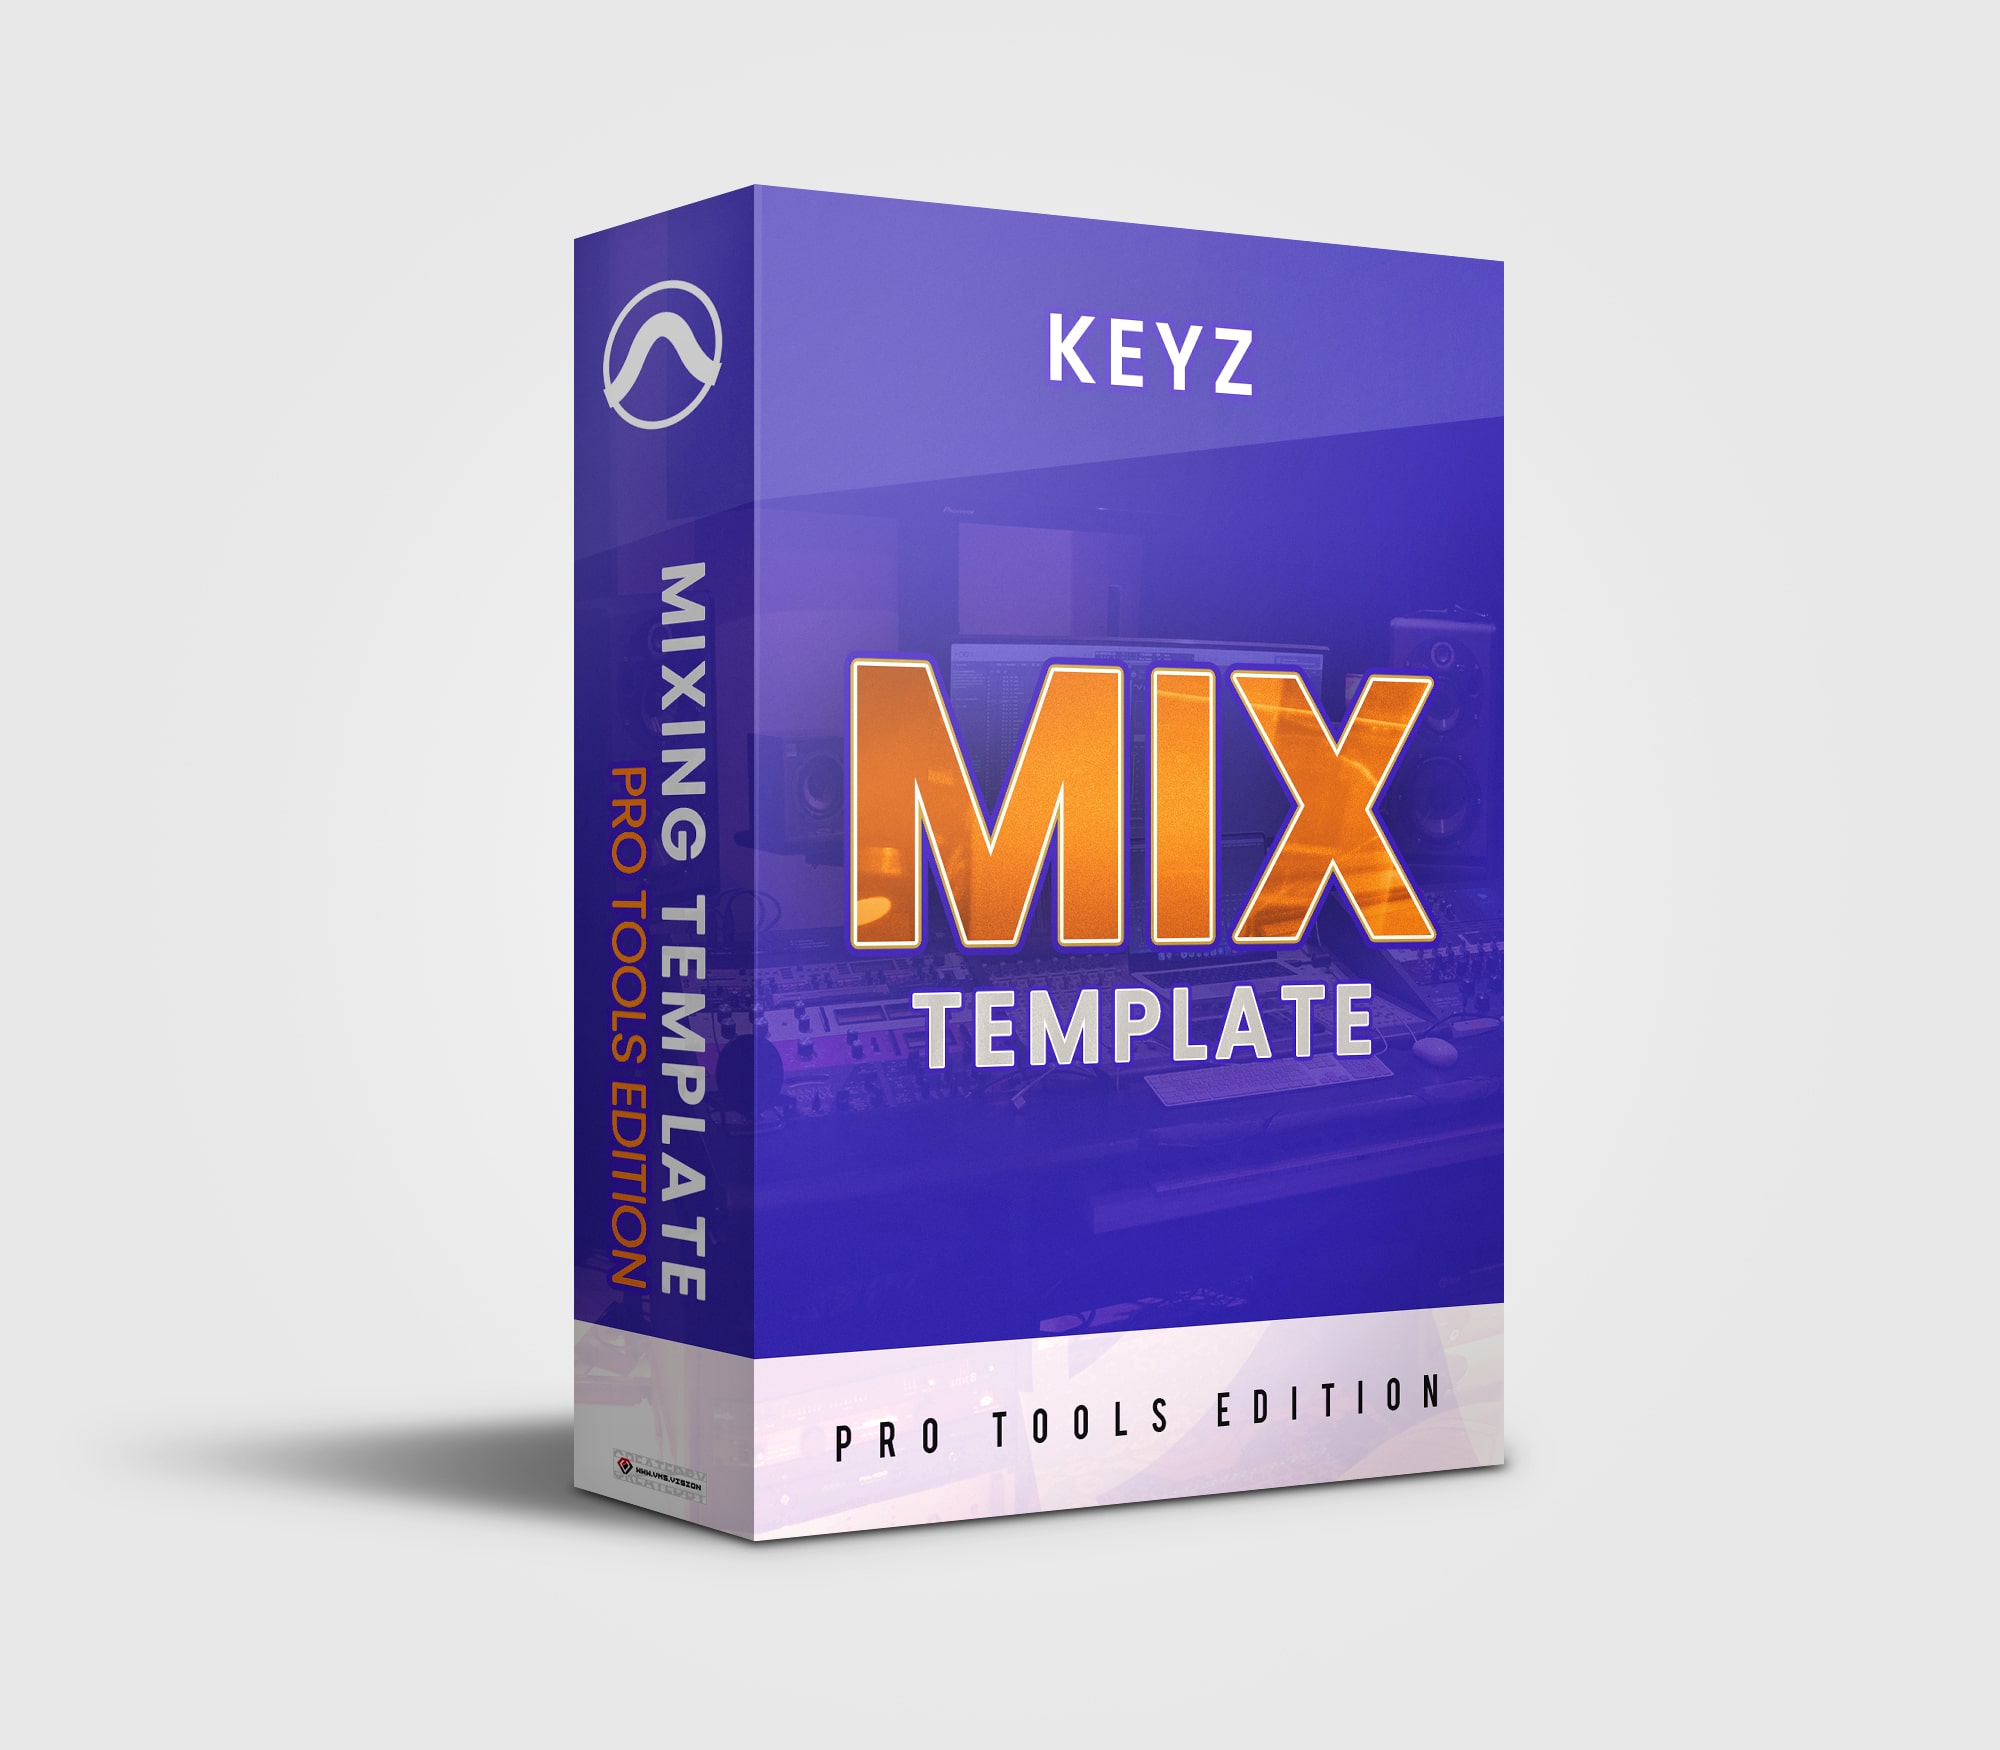 keyzdashshawn-keyz-mix-template-pro-tools-edition-min